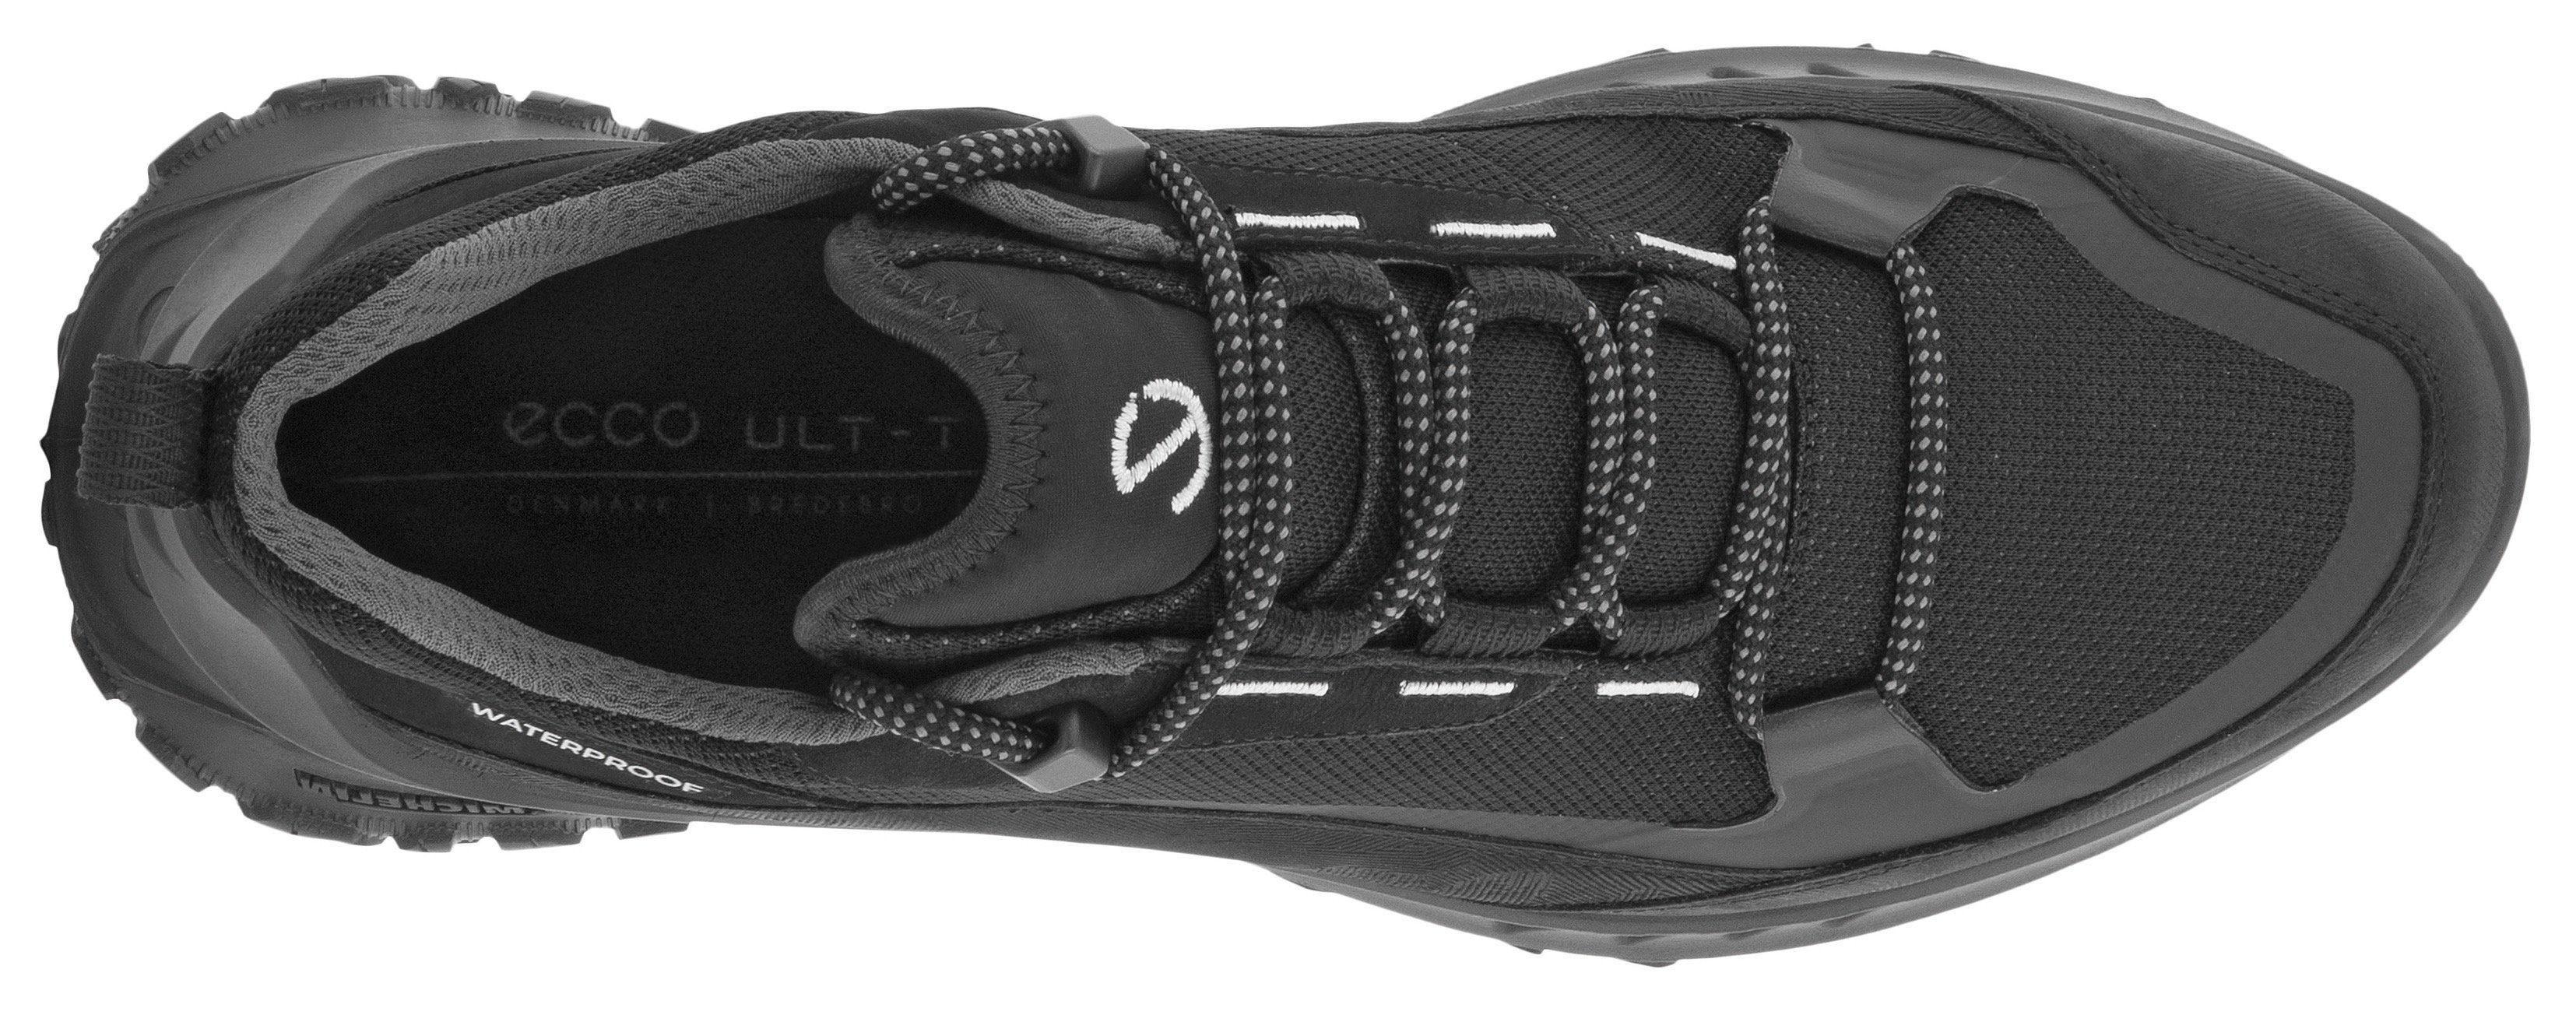 Michelin-Technologie M Ecco sportive ULT-TRN Sneaker Laufsohle mit schwarz